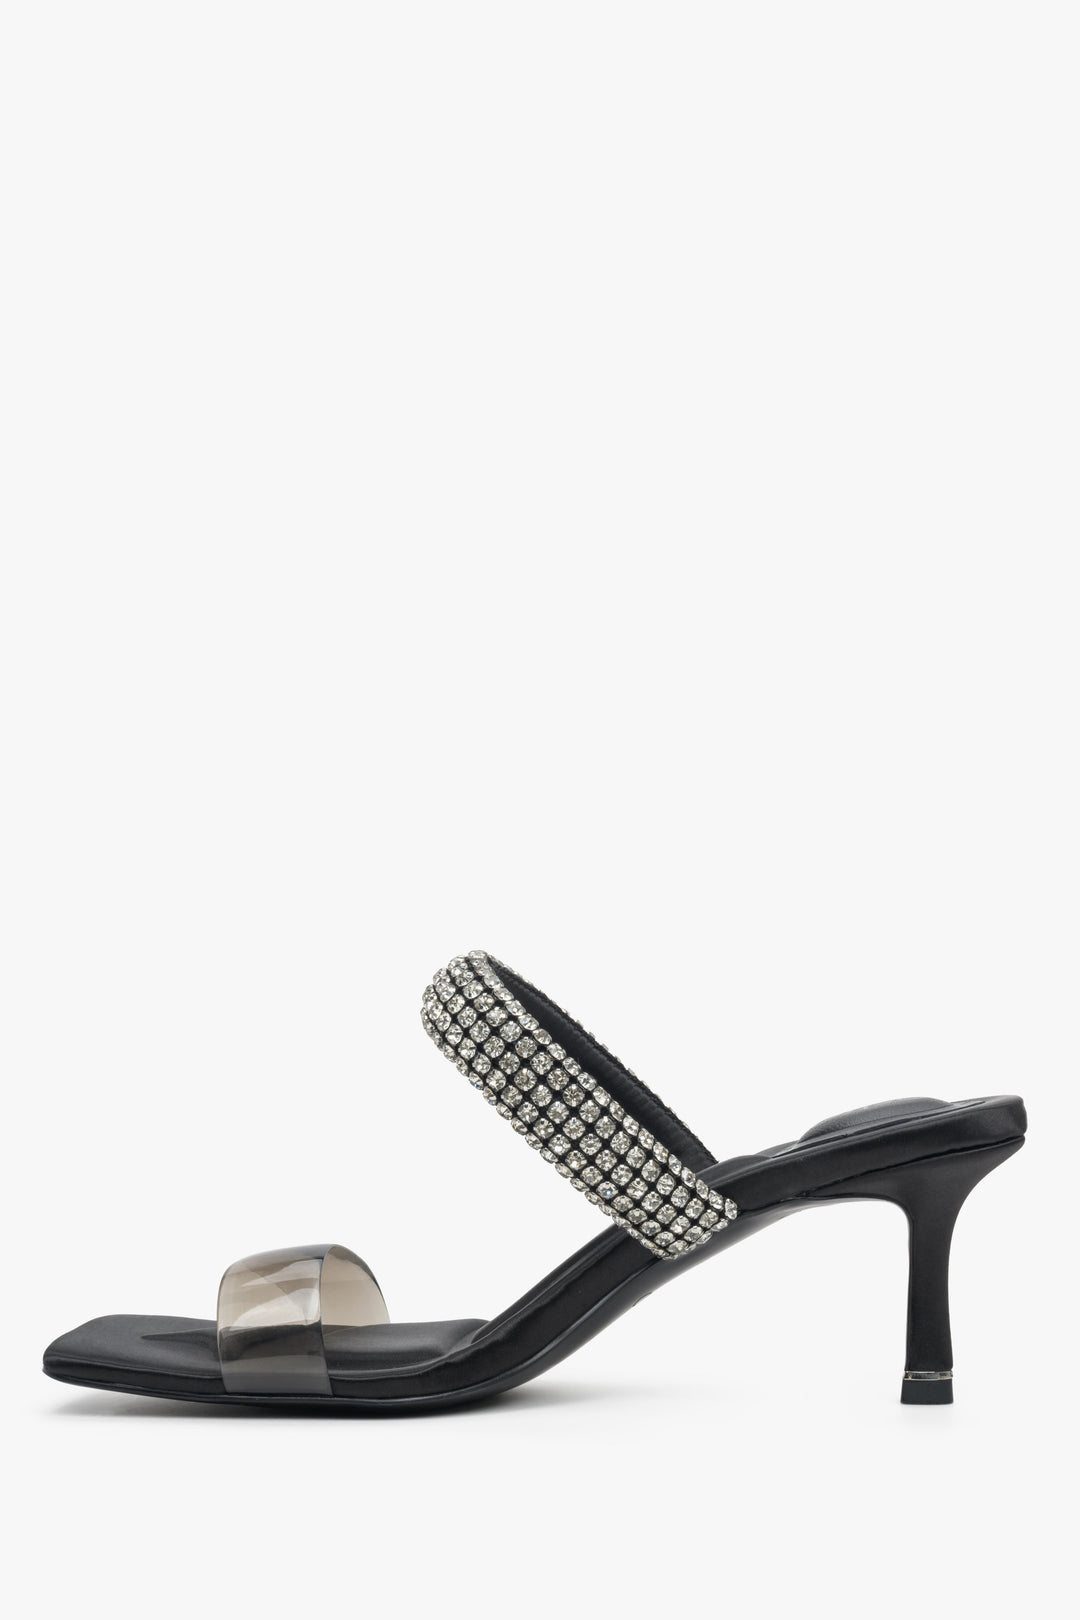 Skórzane, czarne klapki damskie na szpilce Estro z cyrkoniami - profil butów.